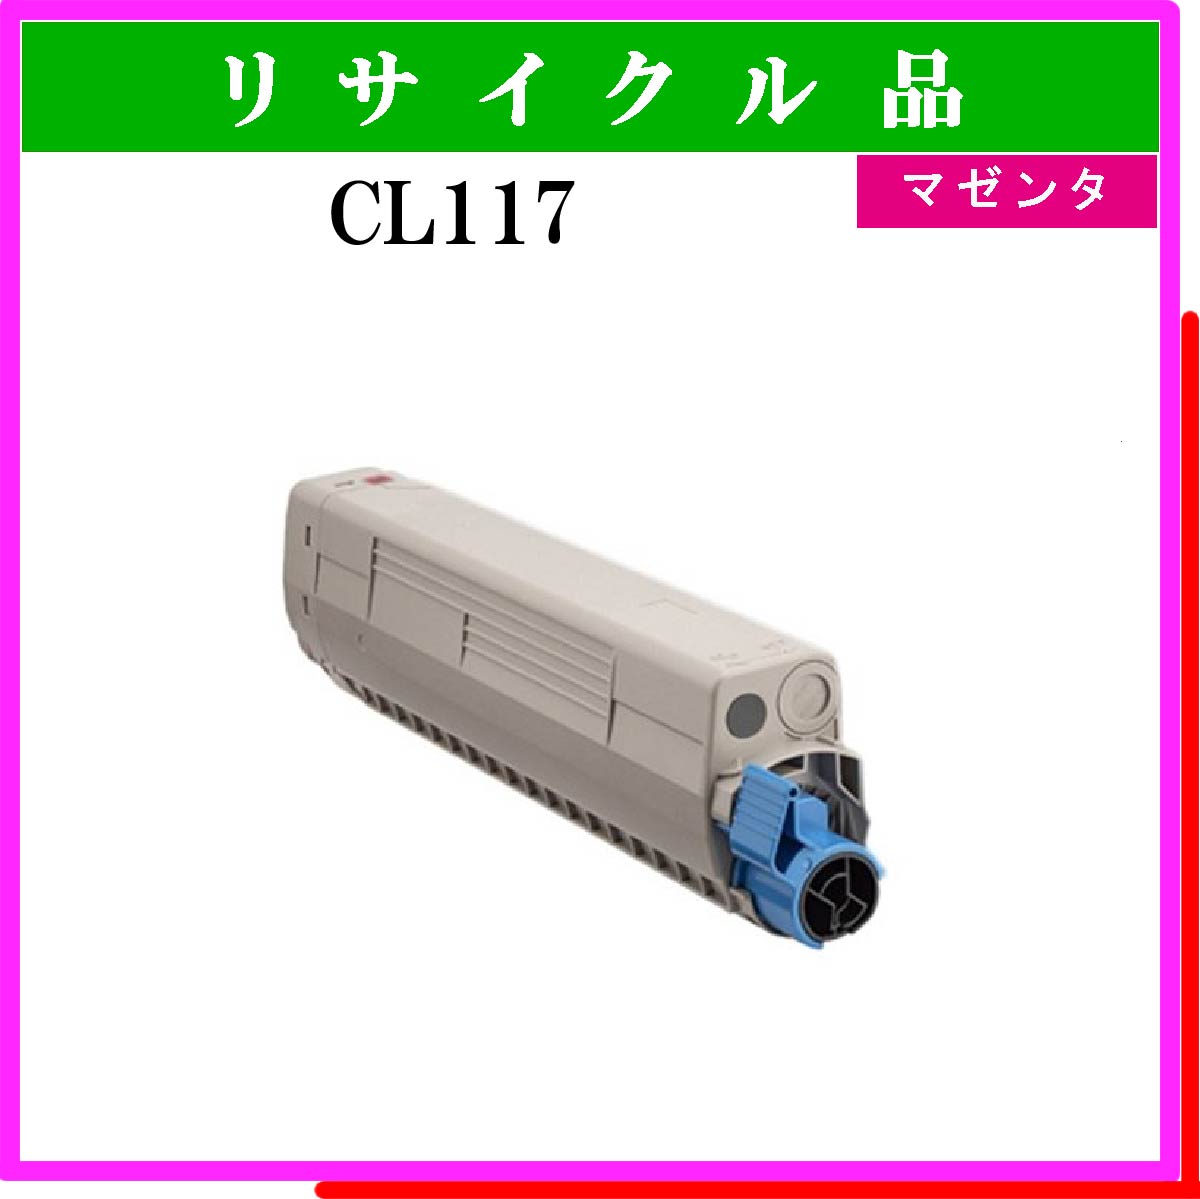 CL117 ﾏｾﾞﾝﾀ